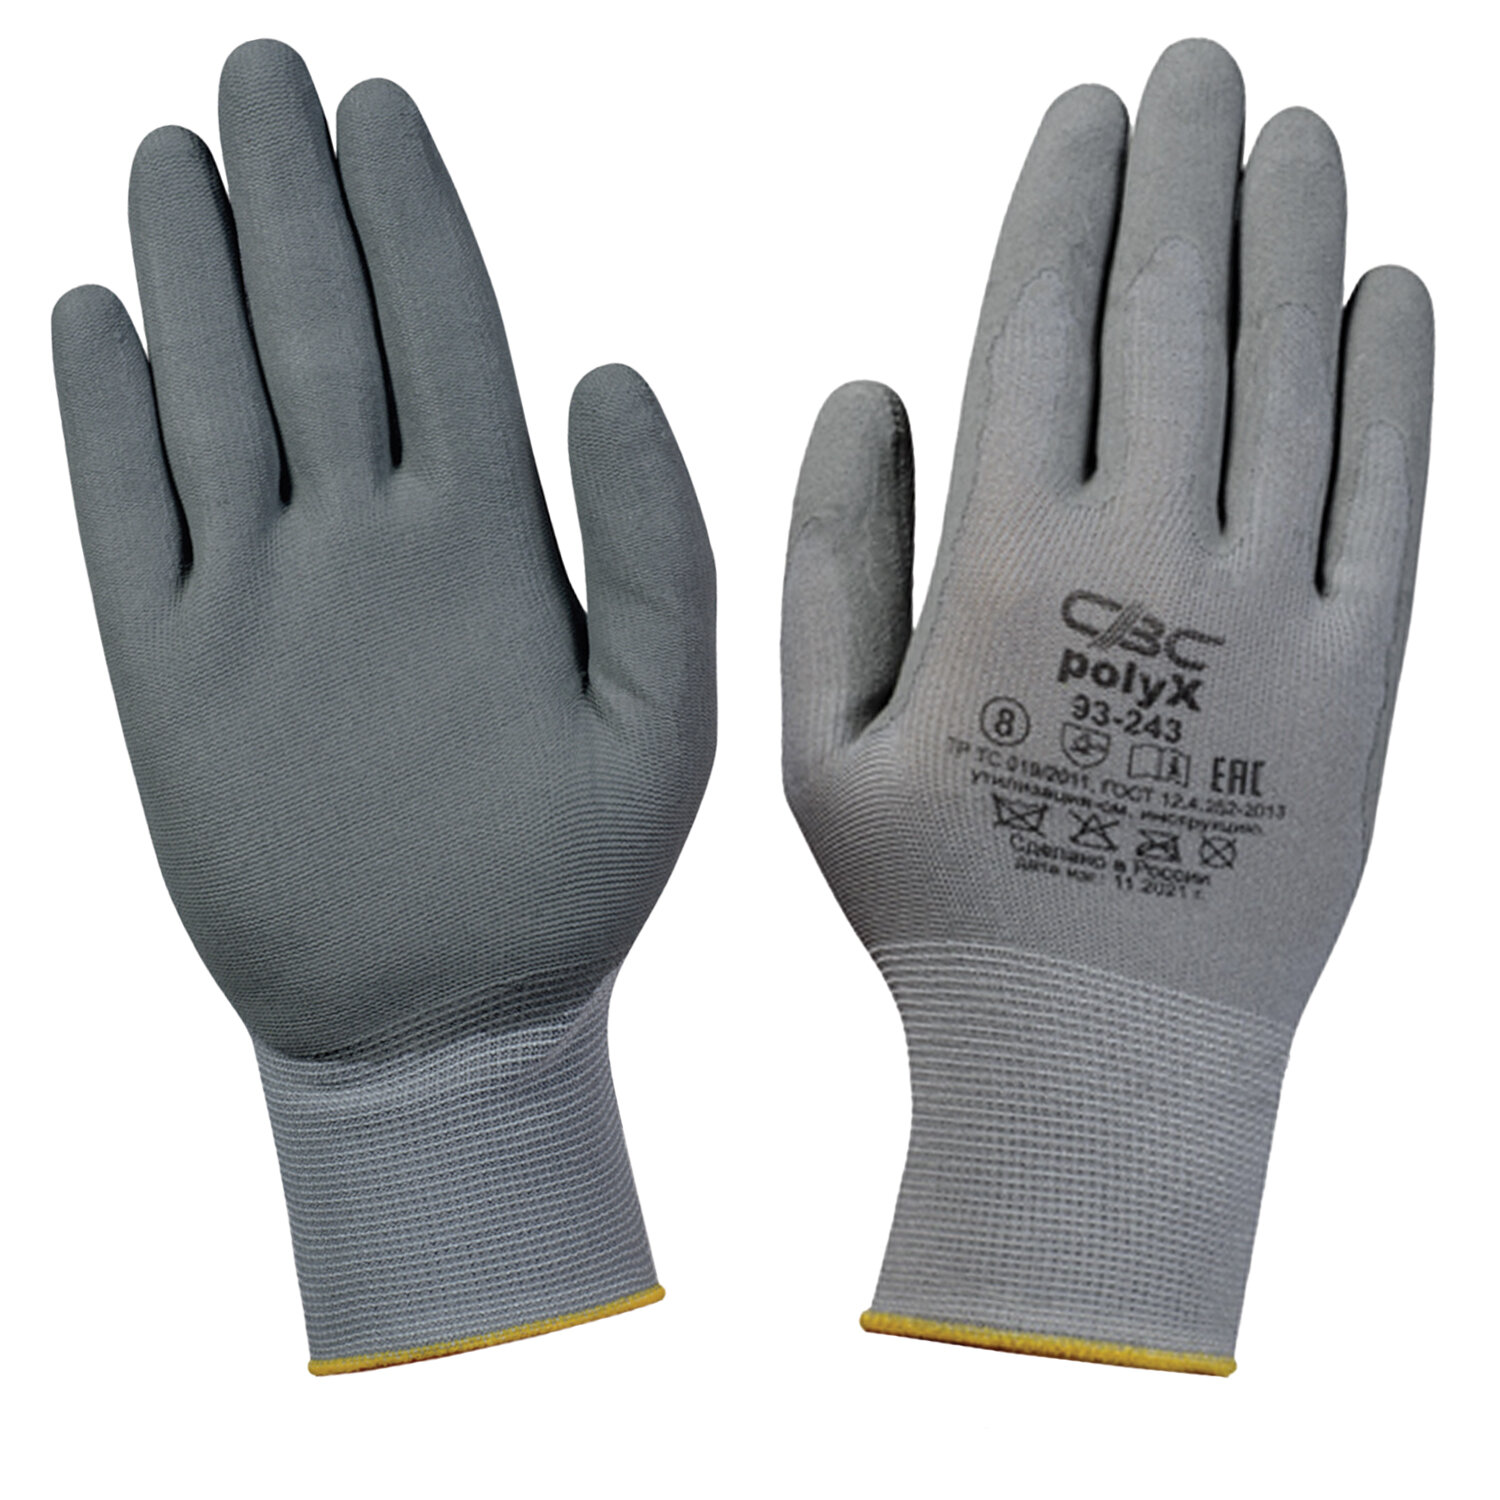 Перчатки полиэфирные СВС, размер L, 10 пар перчатки свс поликс 93 243 защитные эластичные с полиуретановым покрытием